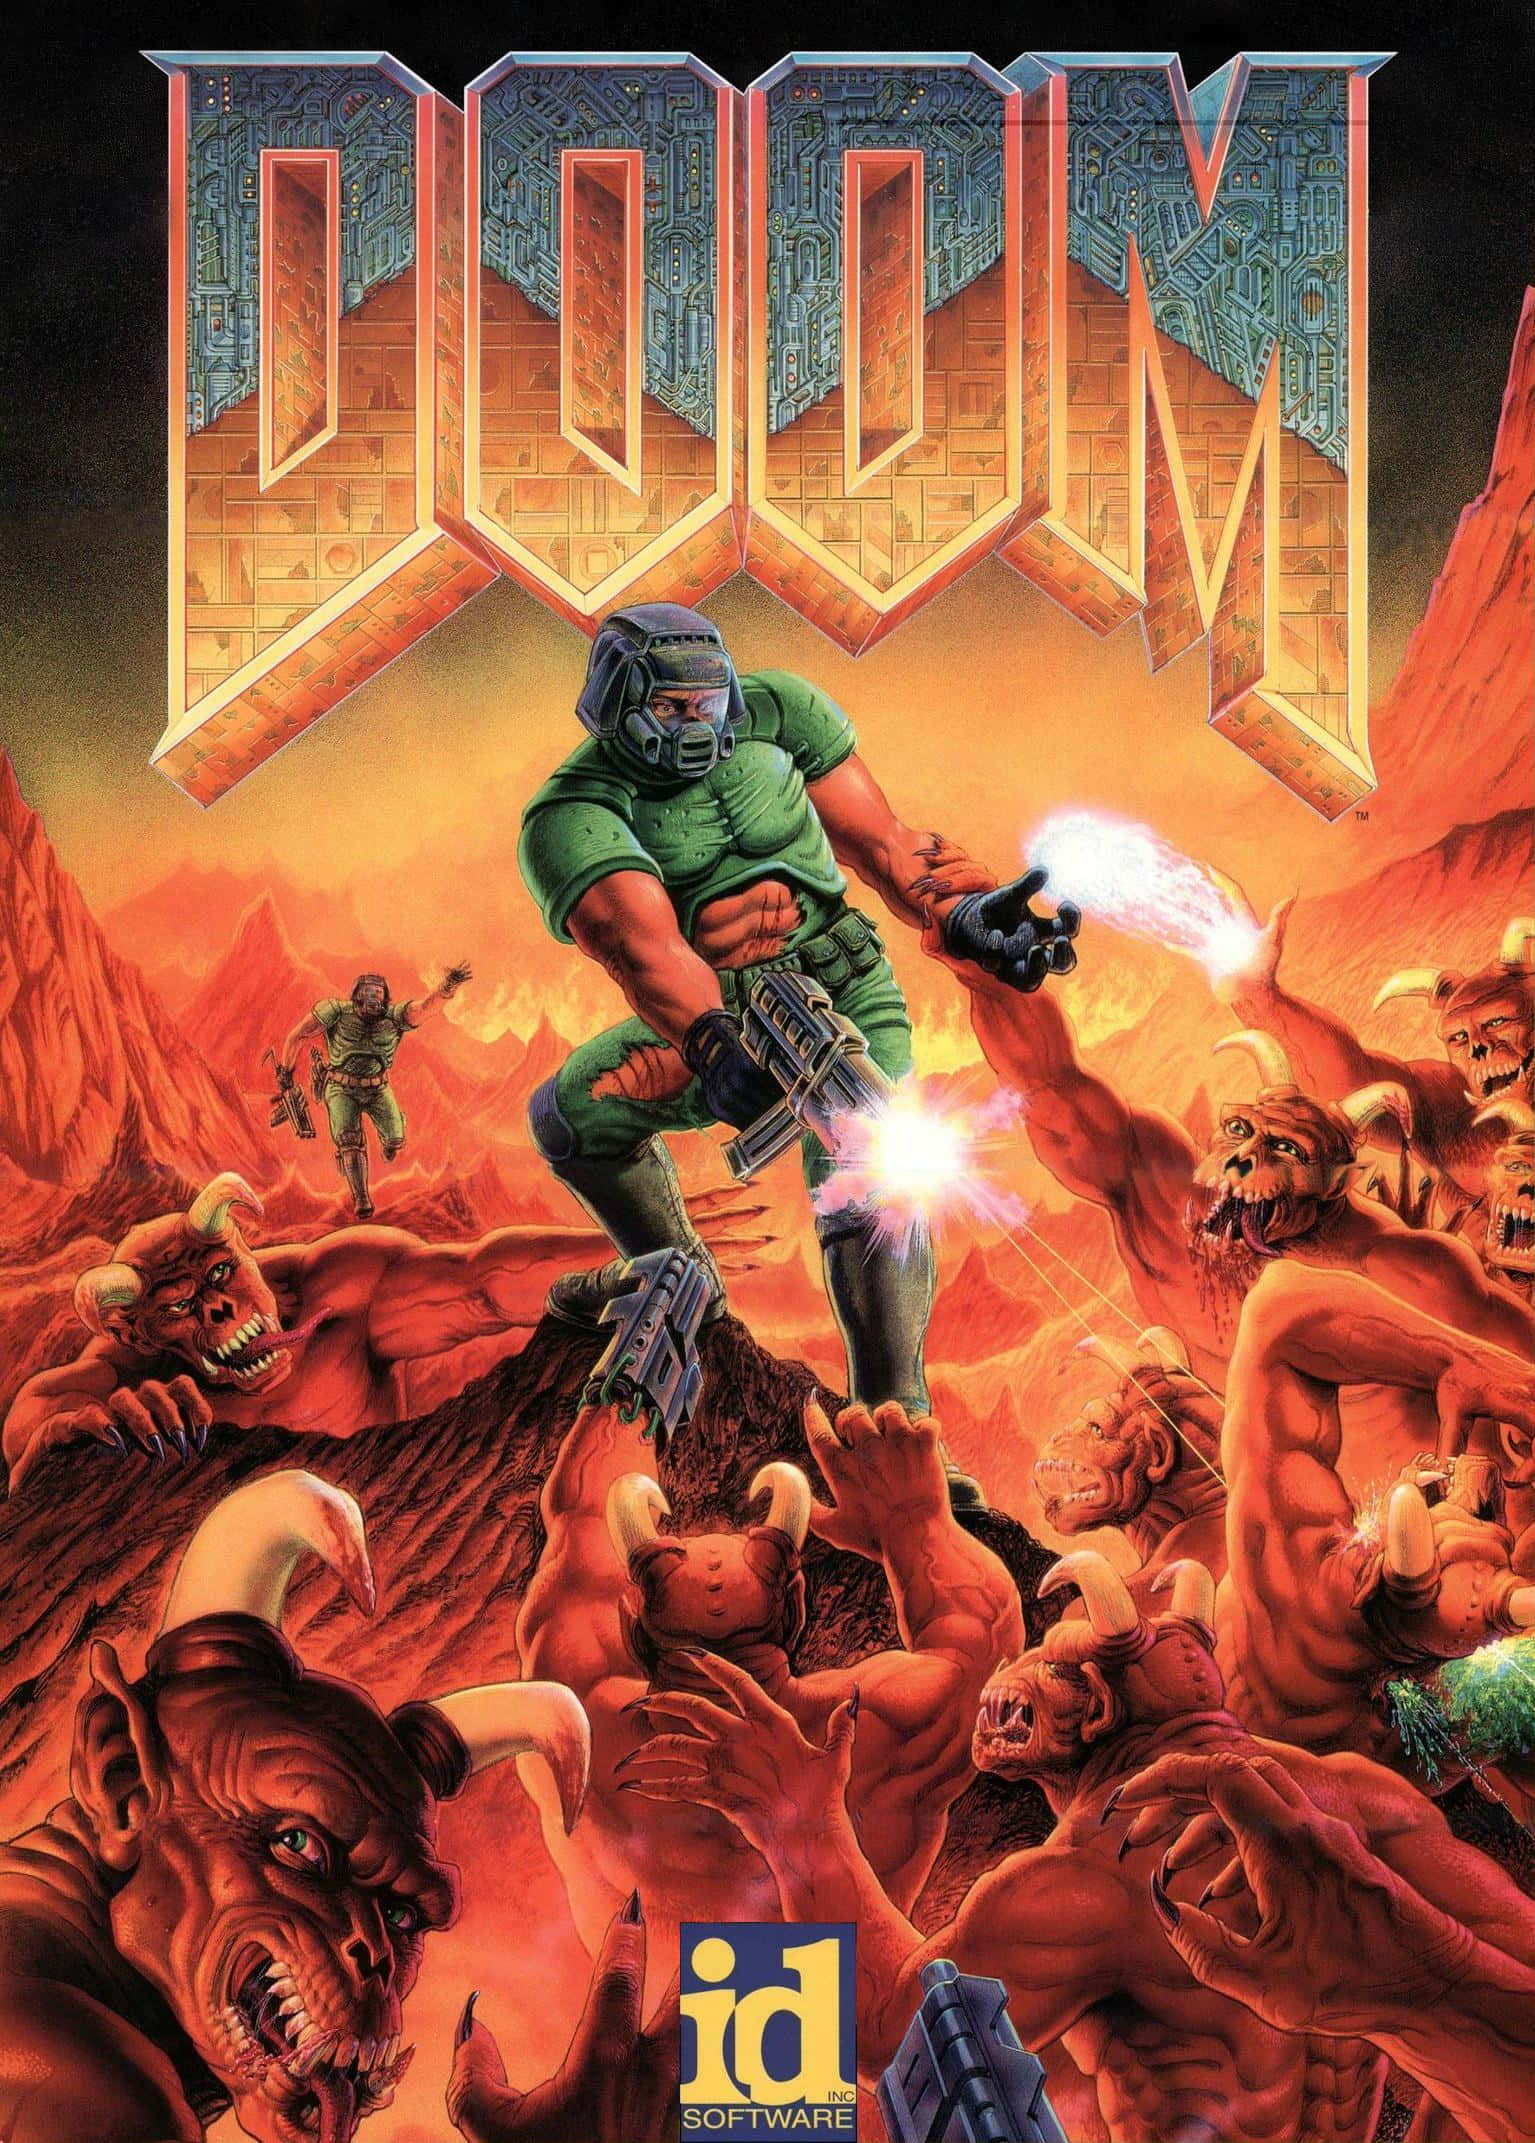 Doomguy Luchando Contra Monstruos En El Fondo De Pantalla De Doom Eternal En Pixel 3xl.